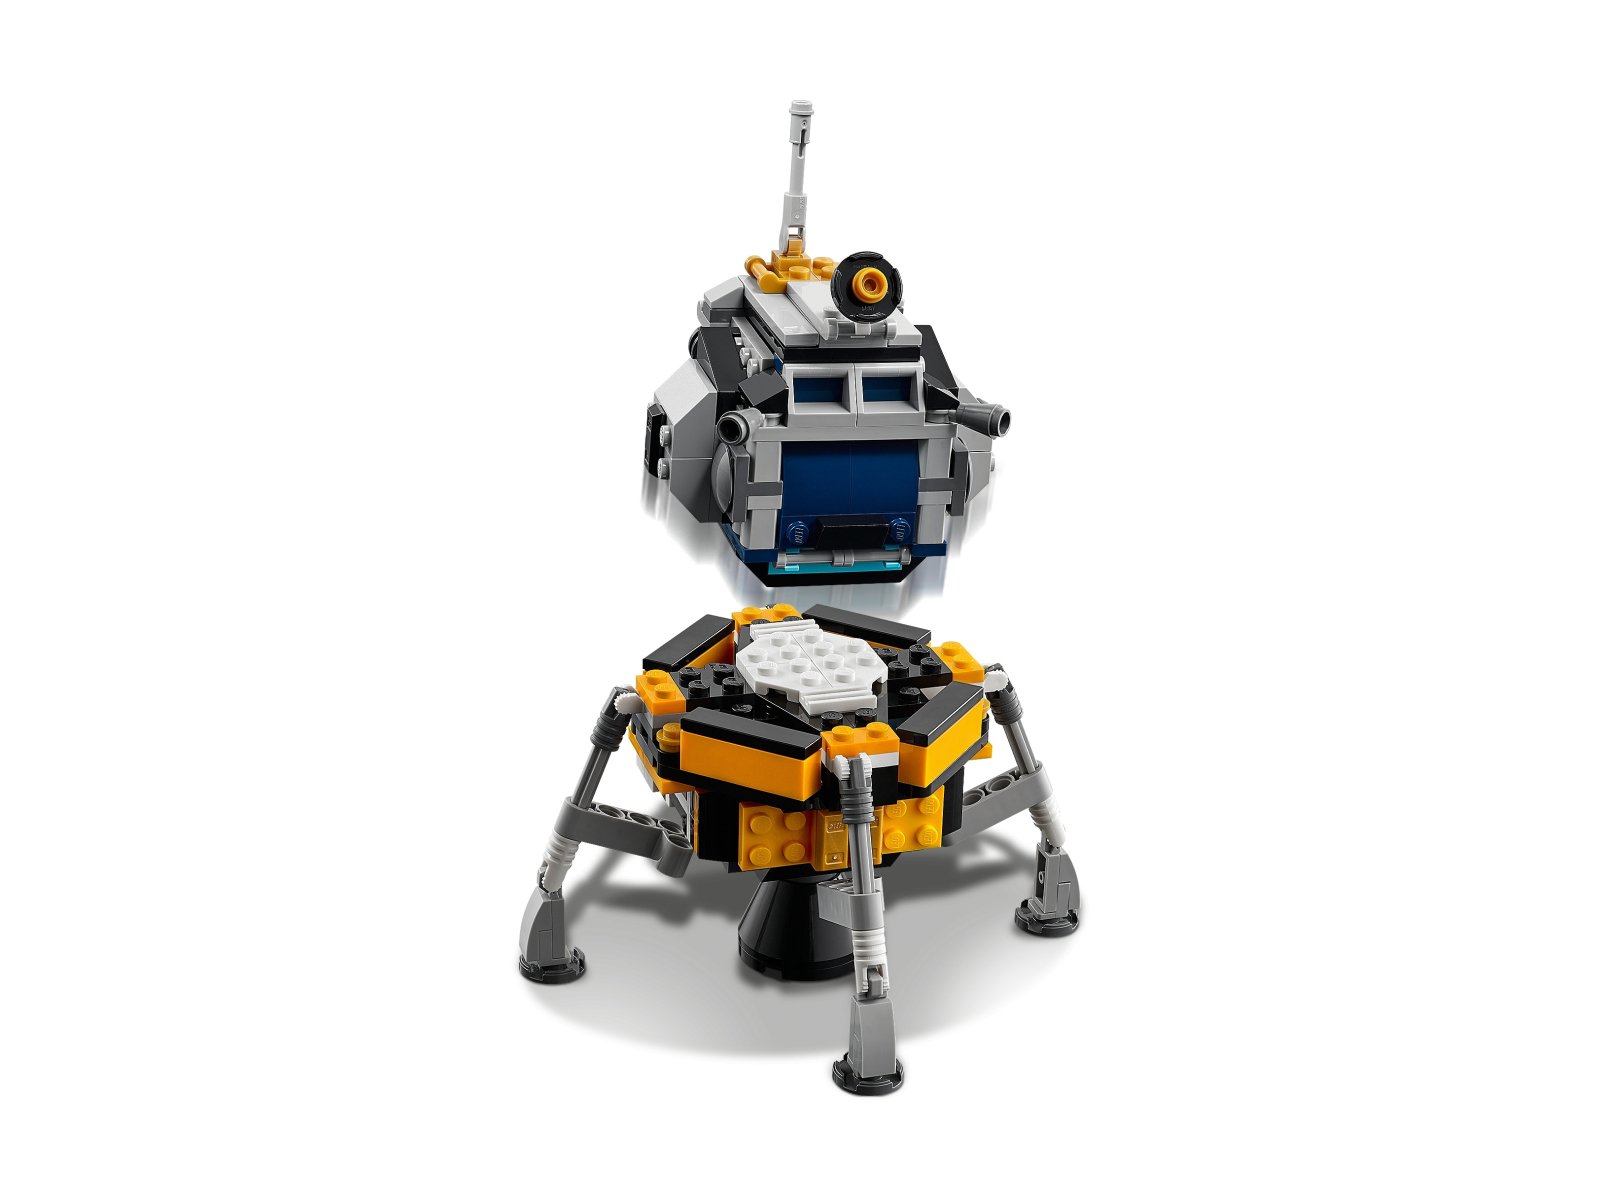 LEGO 31117 Creator 3 w 1 Przygoda w promie kosmicznym